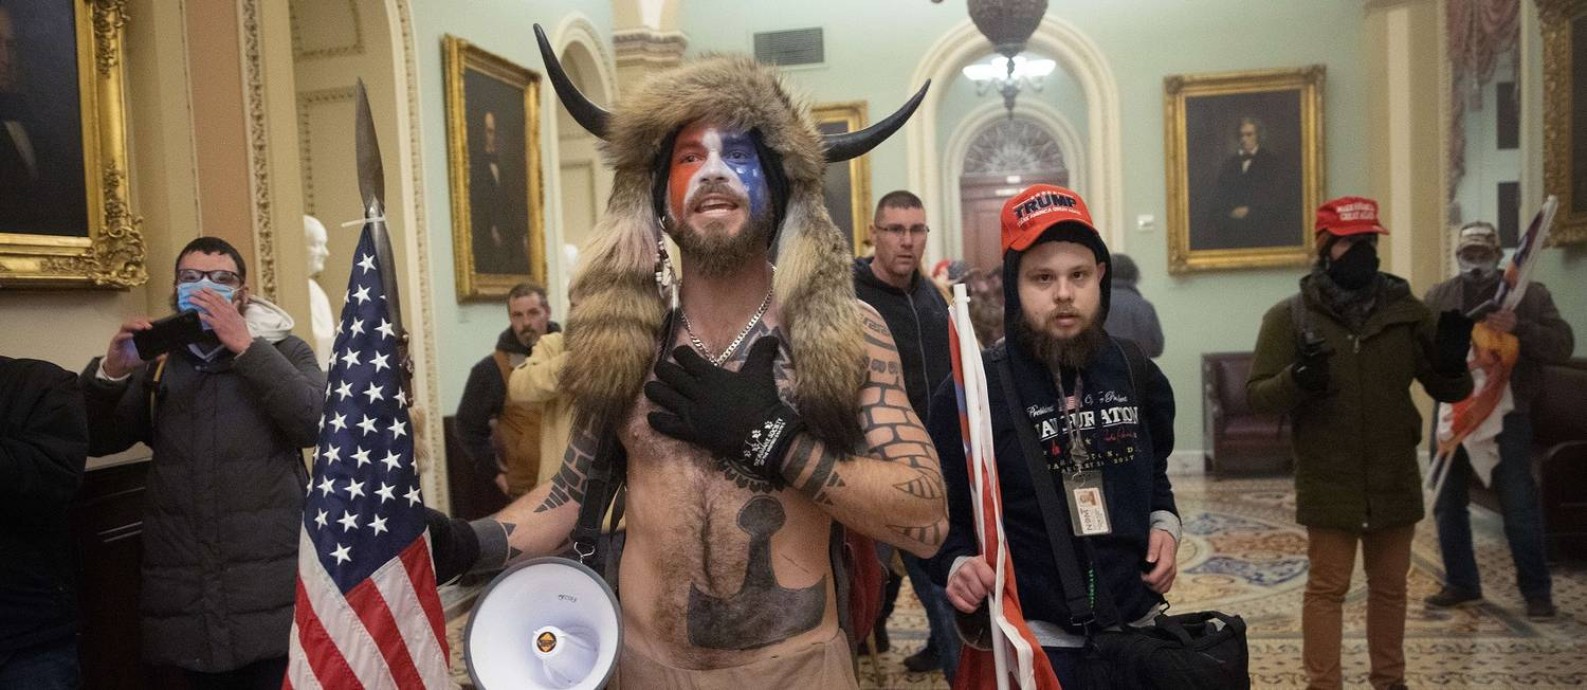 Usando pele animal, chapéu com chifres e rosto pintado, apoiador da QAnon rouba a cena na invasão ao Congresso americano Foto: WIN MCNAMEE / AFP/06-01-2021